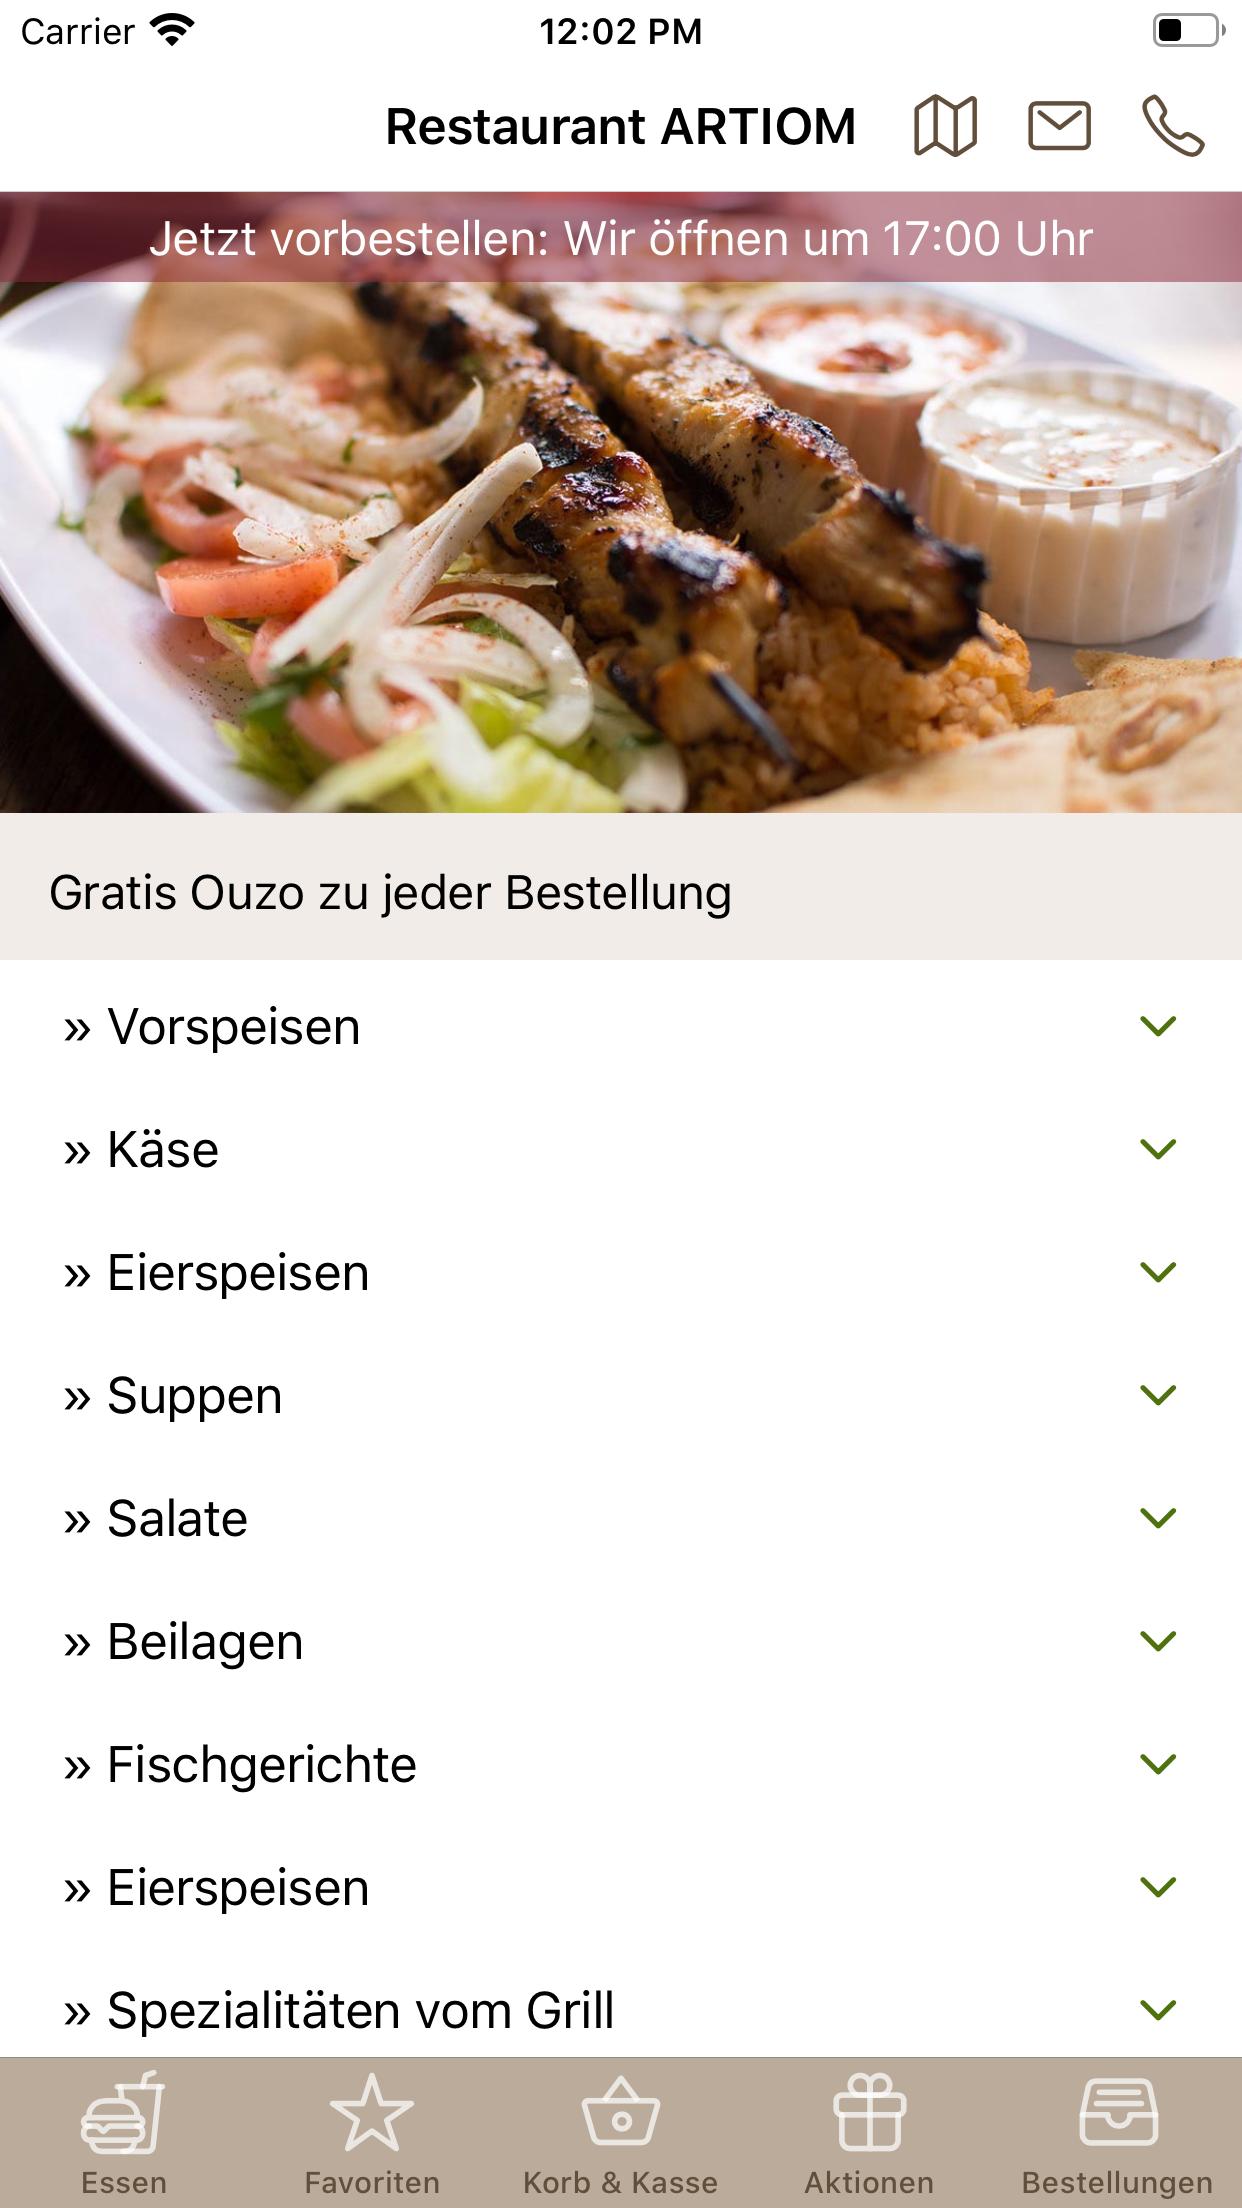 ARTIOM griechisches Restaurant in Bad Salzuflen APK for Android Download